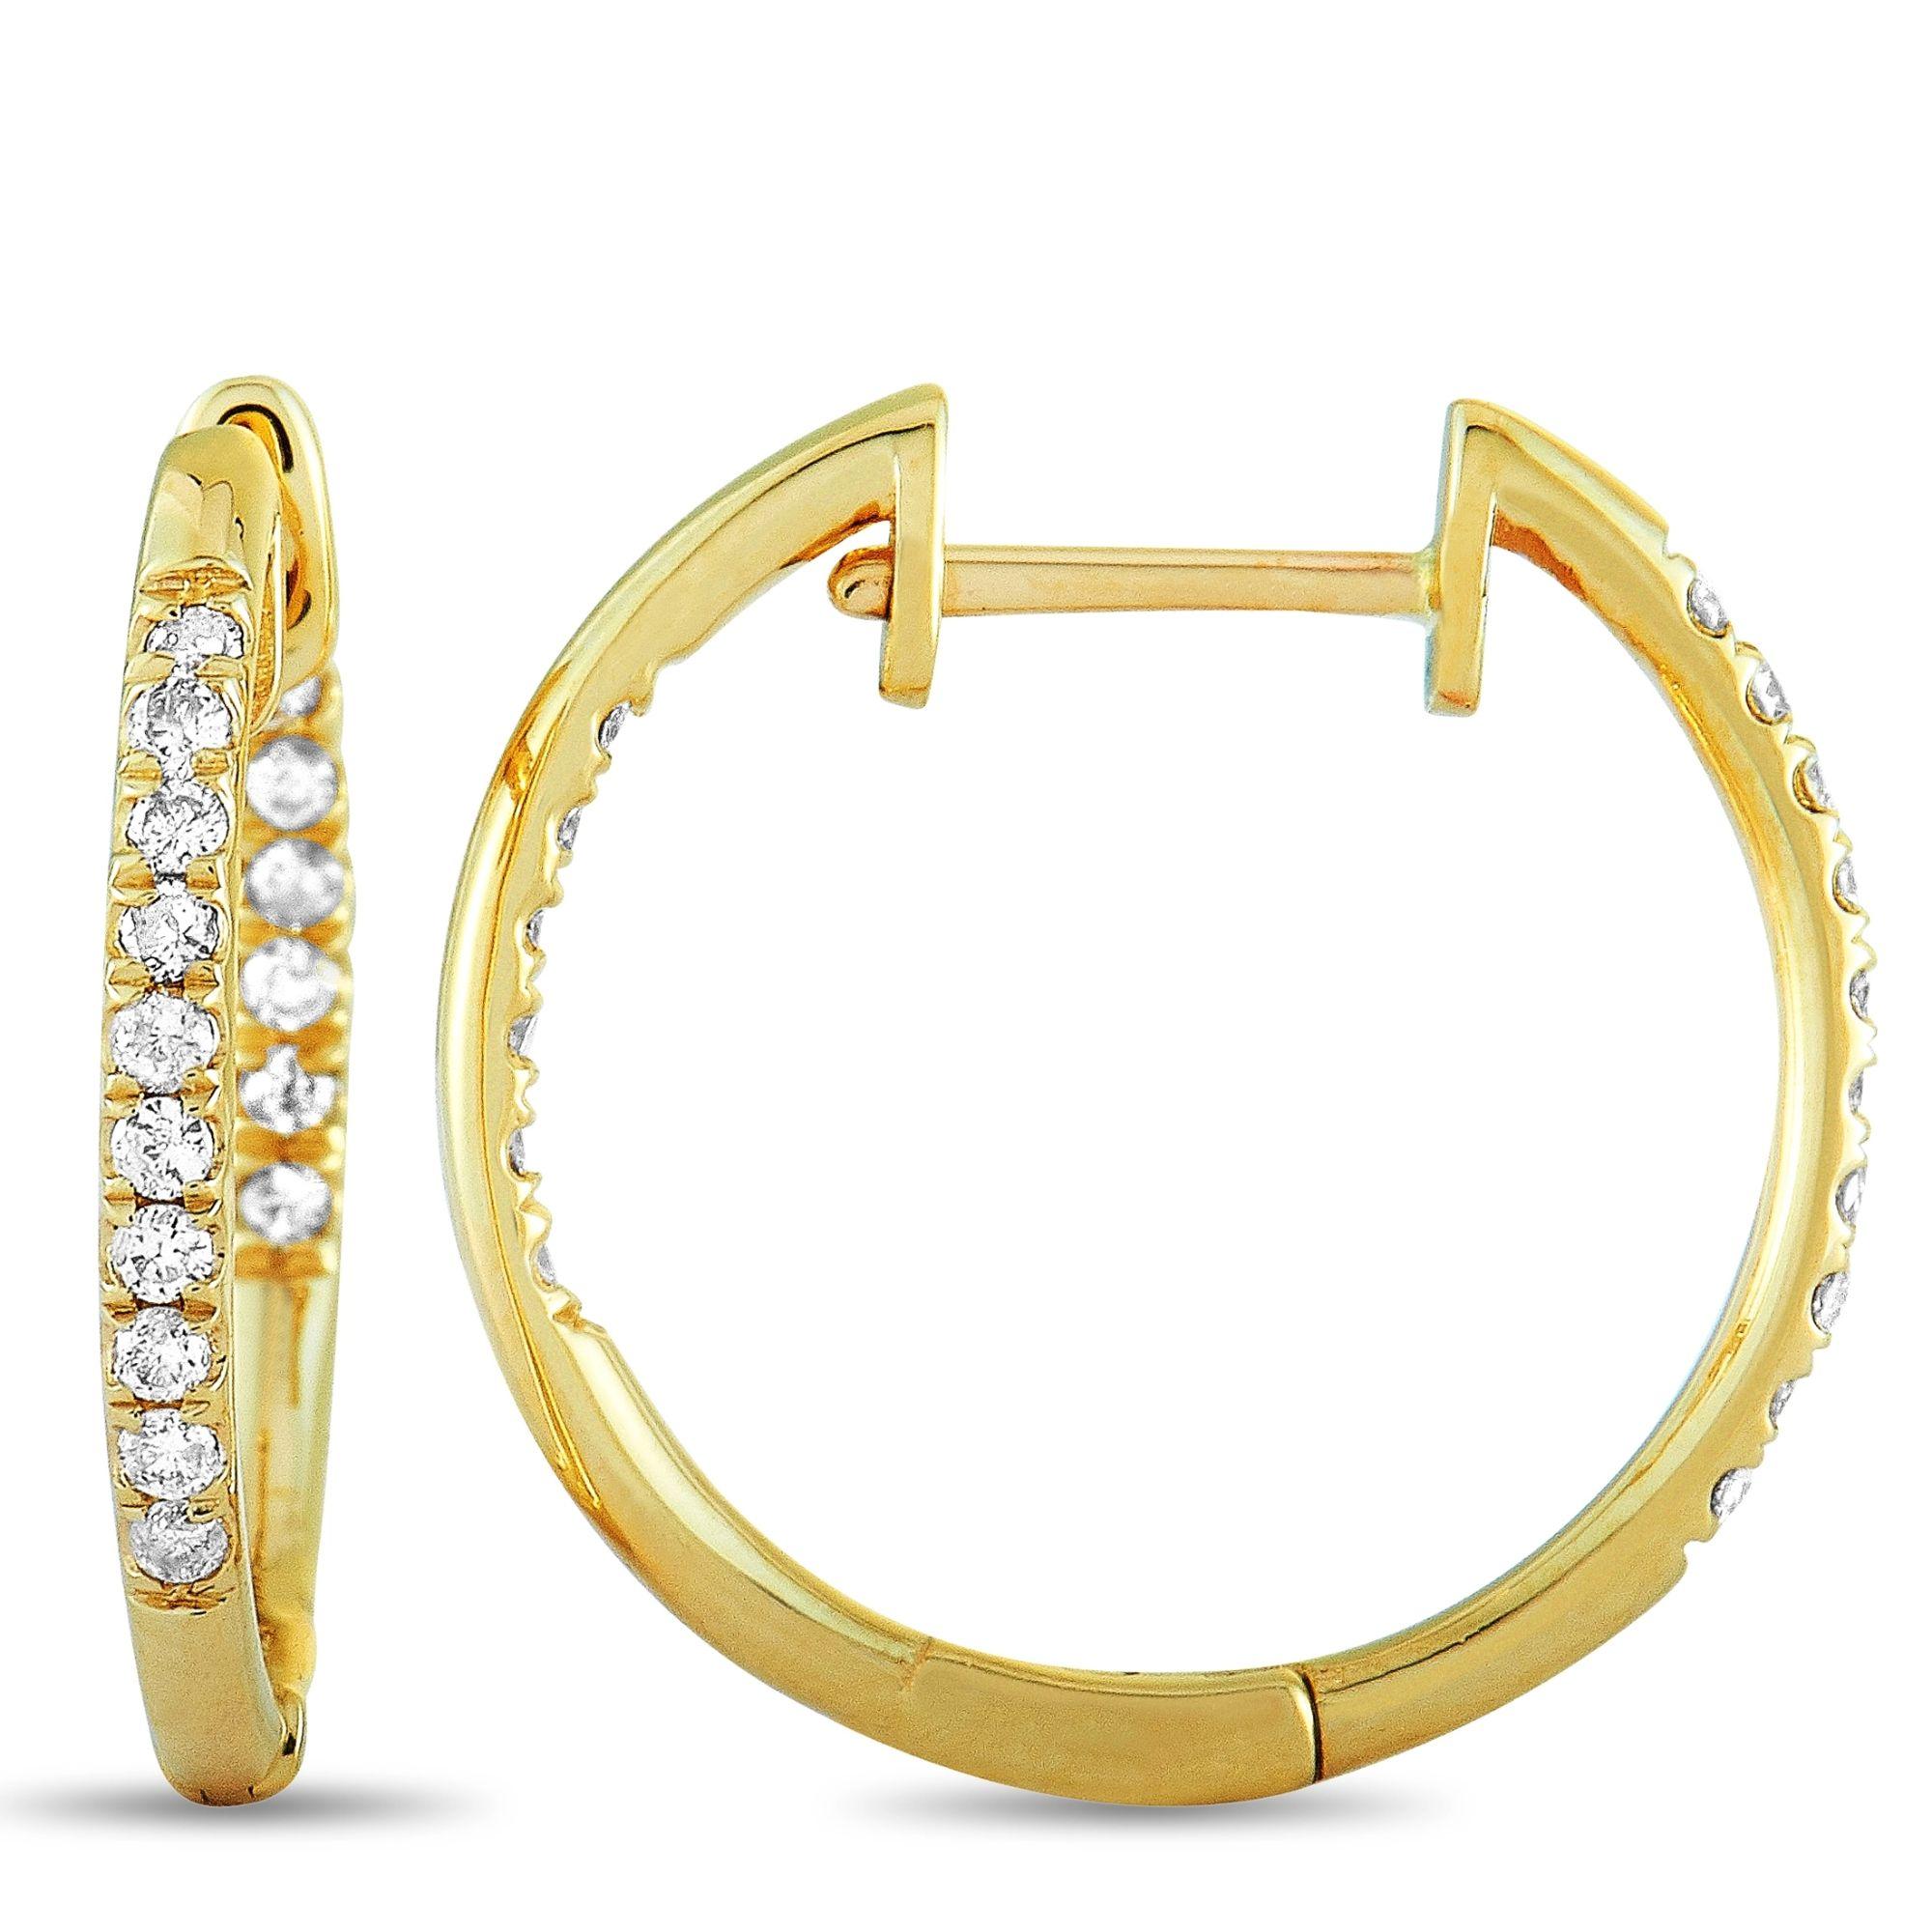 Diese LB Exclusive Ohrringe sind aus 14K Gelbgold und Diamanten, die insgesamt 0,25 Karat. Die Ohrringe messen 0,70